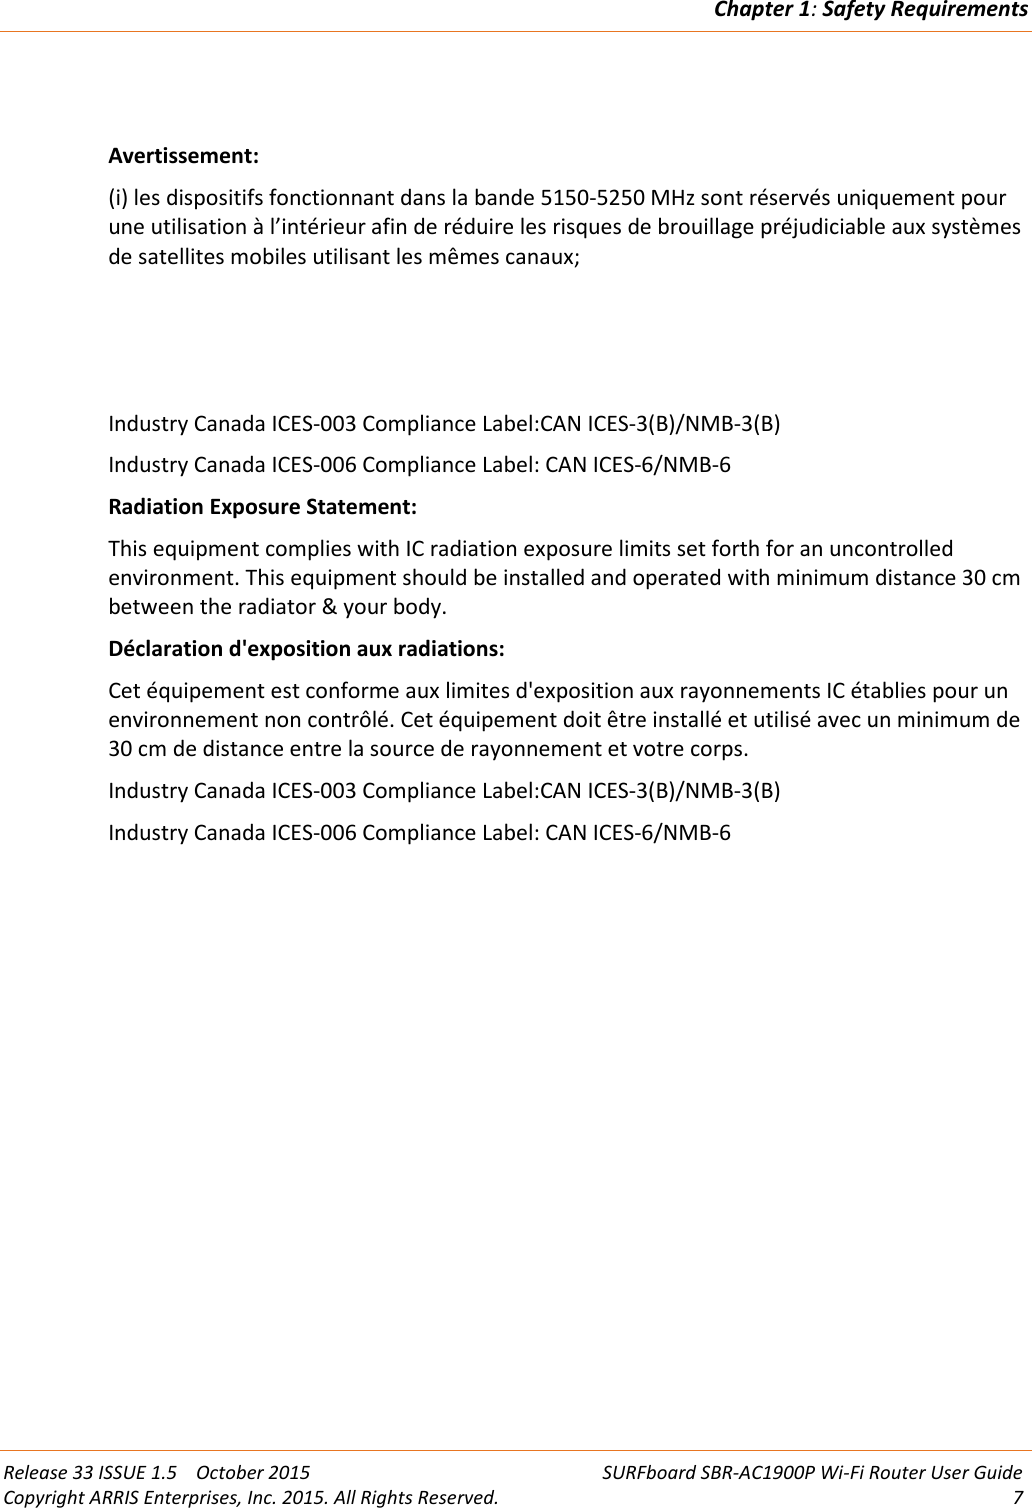 Chapter 1:Safety RequirementsRelease 33 ISSUE 1.5 October 2015 SURFboard SBR-AC1900P Wi-Fi Router User GuideCopyright ARRIS Enterprises, Inc. 2015. All Rights Reserved. 7Avertissement:(i) les dispositifs fonctionnant dans la bande 5150-5250 MHz sont réservés uniquement pourune utilisation à l’intérieur afin de réduire les risques de brouillage préjudiciable aux systèmesde satellites mobiles utilisant les mêmes canaux;Industry Canada ICES-003 Compliance Label:CAN ICES-3(B)/NMB-3(B)Industry Canada ICES-006 Compliance Label: CAN ICES-6/NMB-6Radiation Exposure Statement:This equipment complies with IC radiation exposure limits set forth for an uncontrolledenvironment. This equipment should be installed and operated with minimum distance 30 cmbetween the radiator &amp; your body.Déclaration d&apos;exposition aux radiations:Cet équipement est conforme aux limites d&apos;exposition aux rayonnements IC établies pour unenvironnement non contrôlé. Cet équipement doit être installé et utilisé avec un minimum de30 cm de distance entre la source de rayonnement et votre corps.Industry Canada ICES-003 Compliance Label:CAN ICES-3(B)/NMB-3(B)Industry Canada ICES-006 Compliance Label: CAN ICES-6/NMB-6